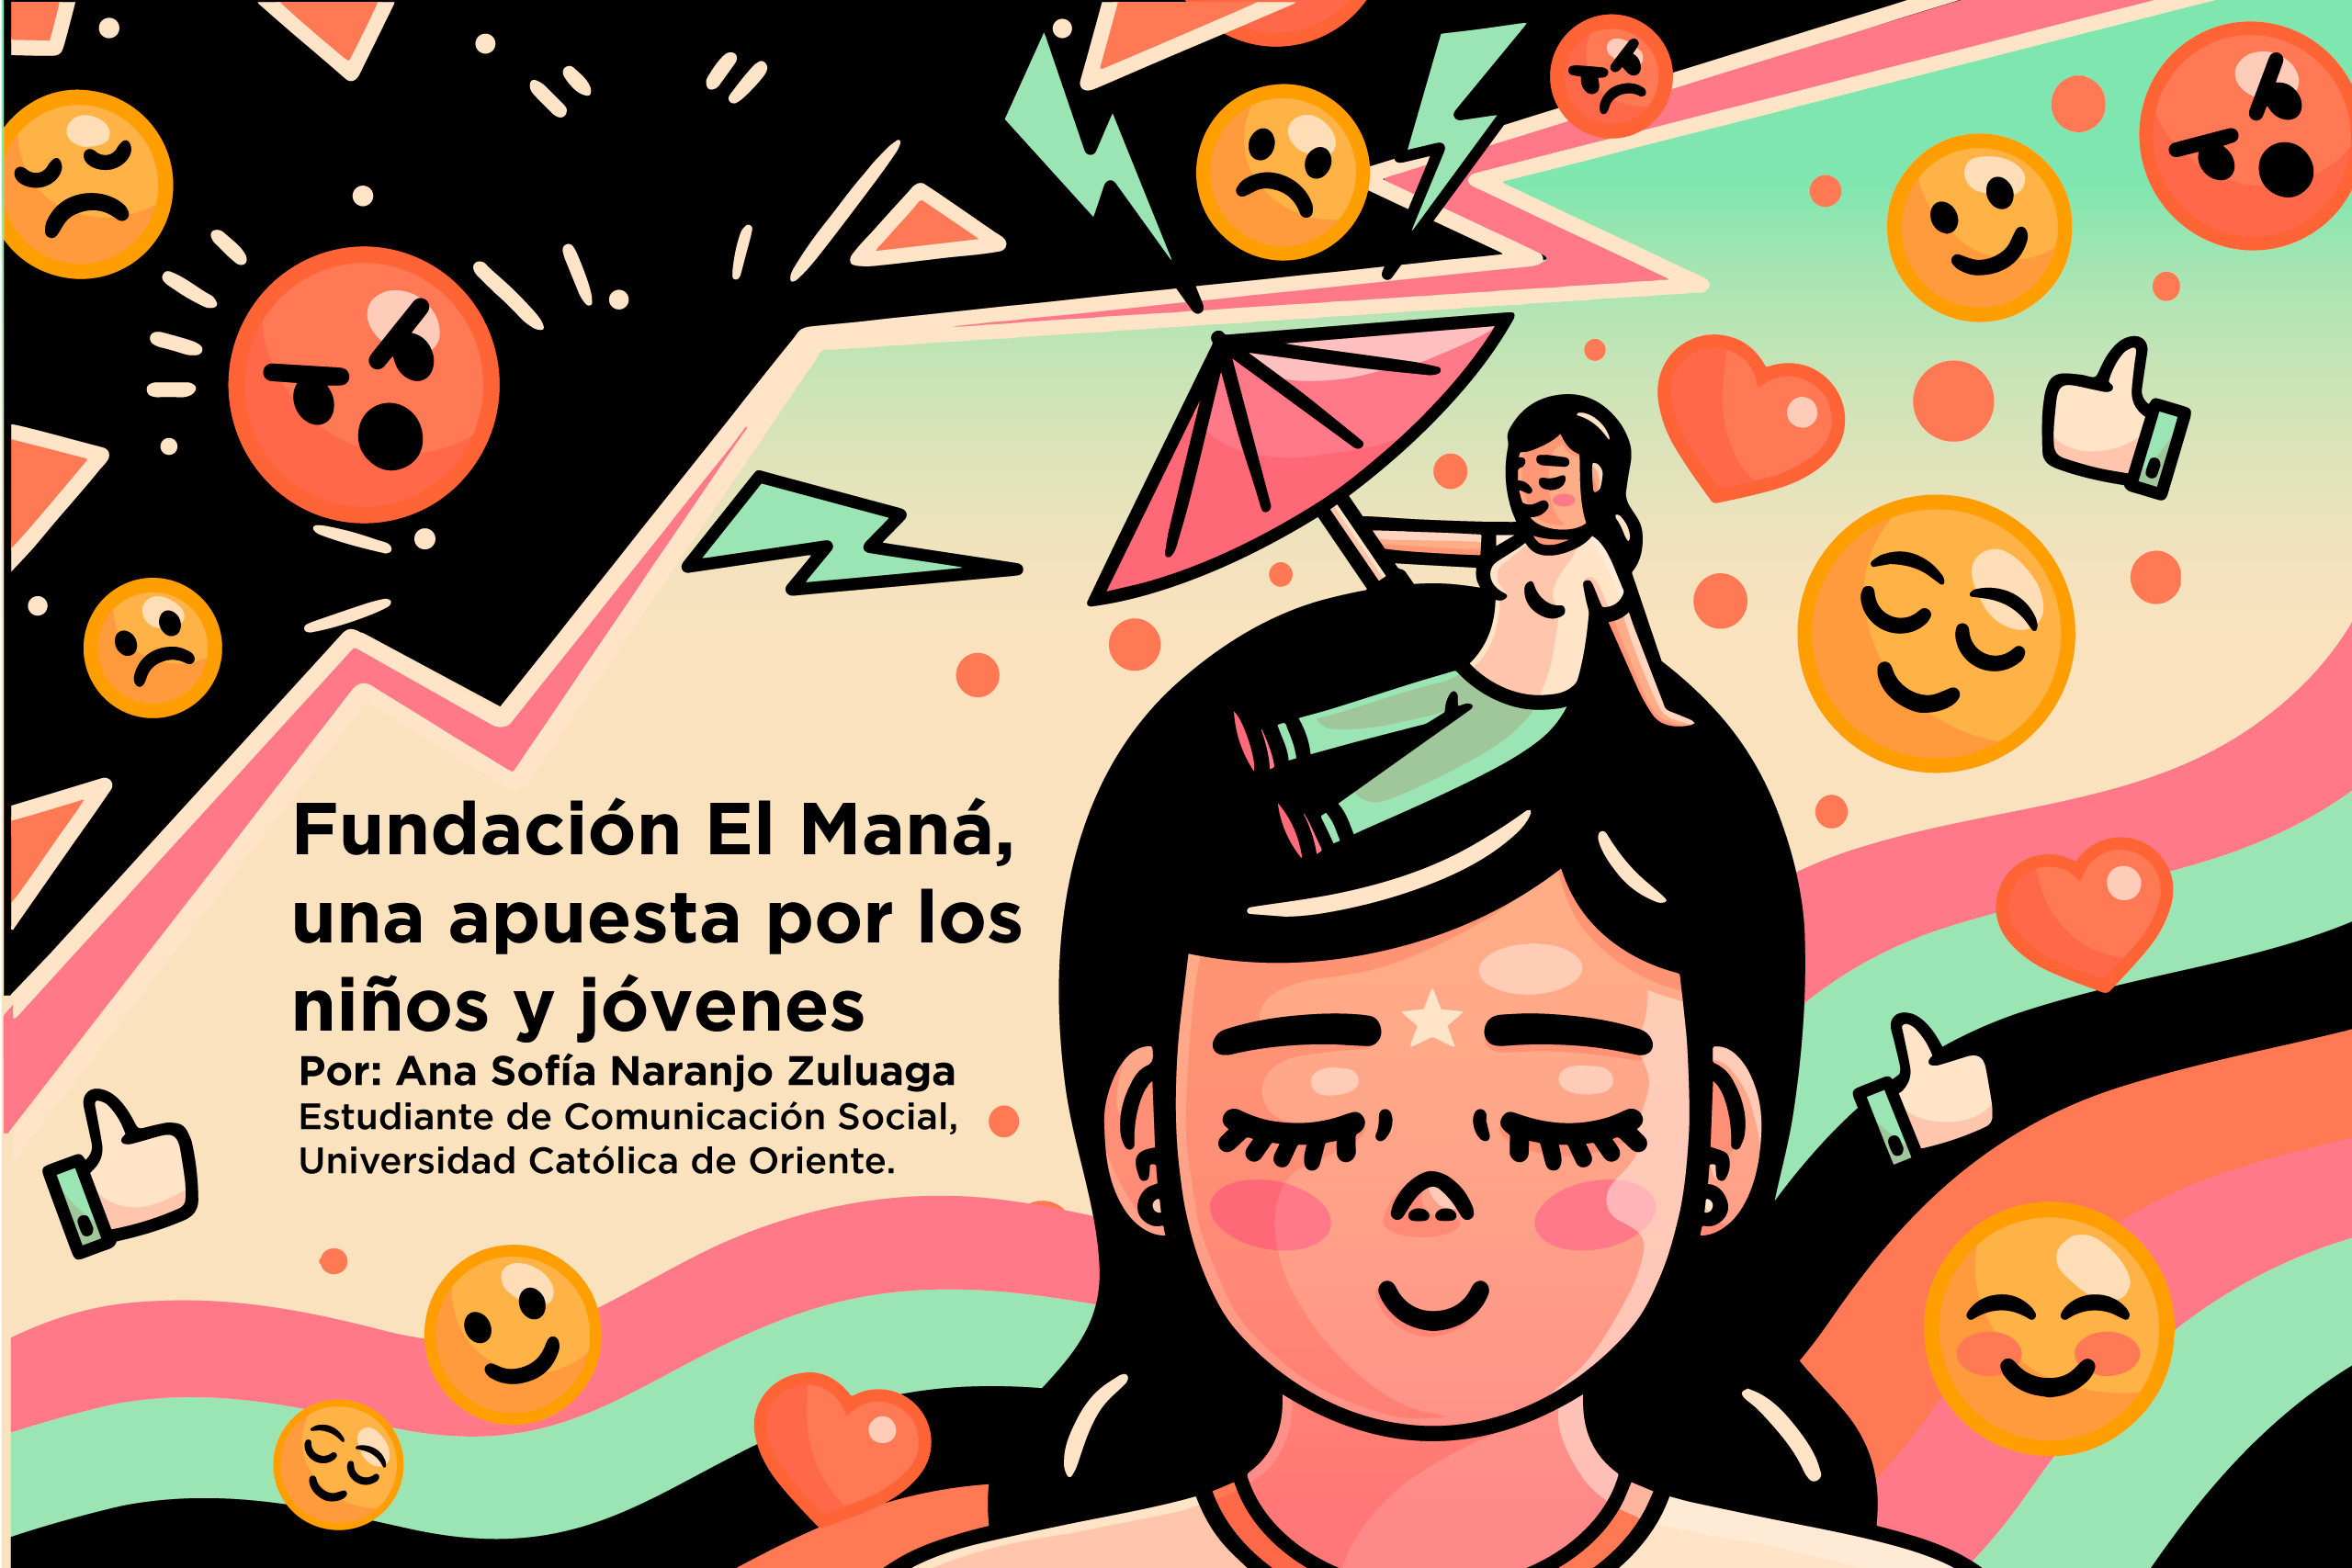 Fundación El Maná, una apuesta por los niños y jóvenes